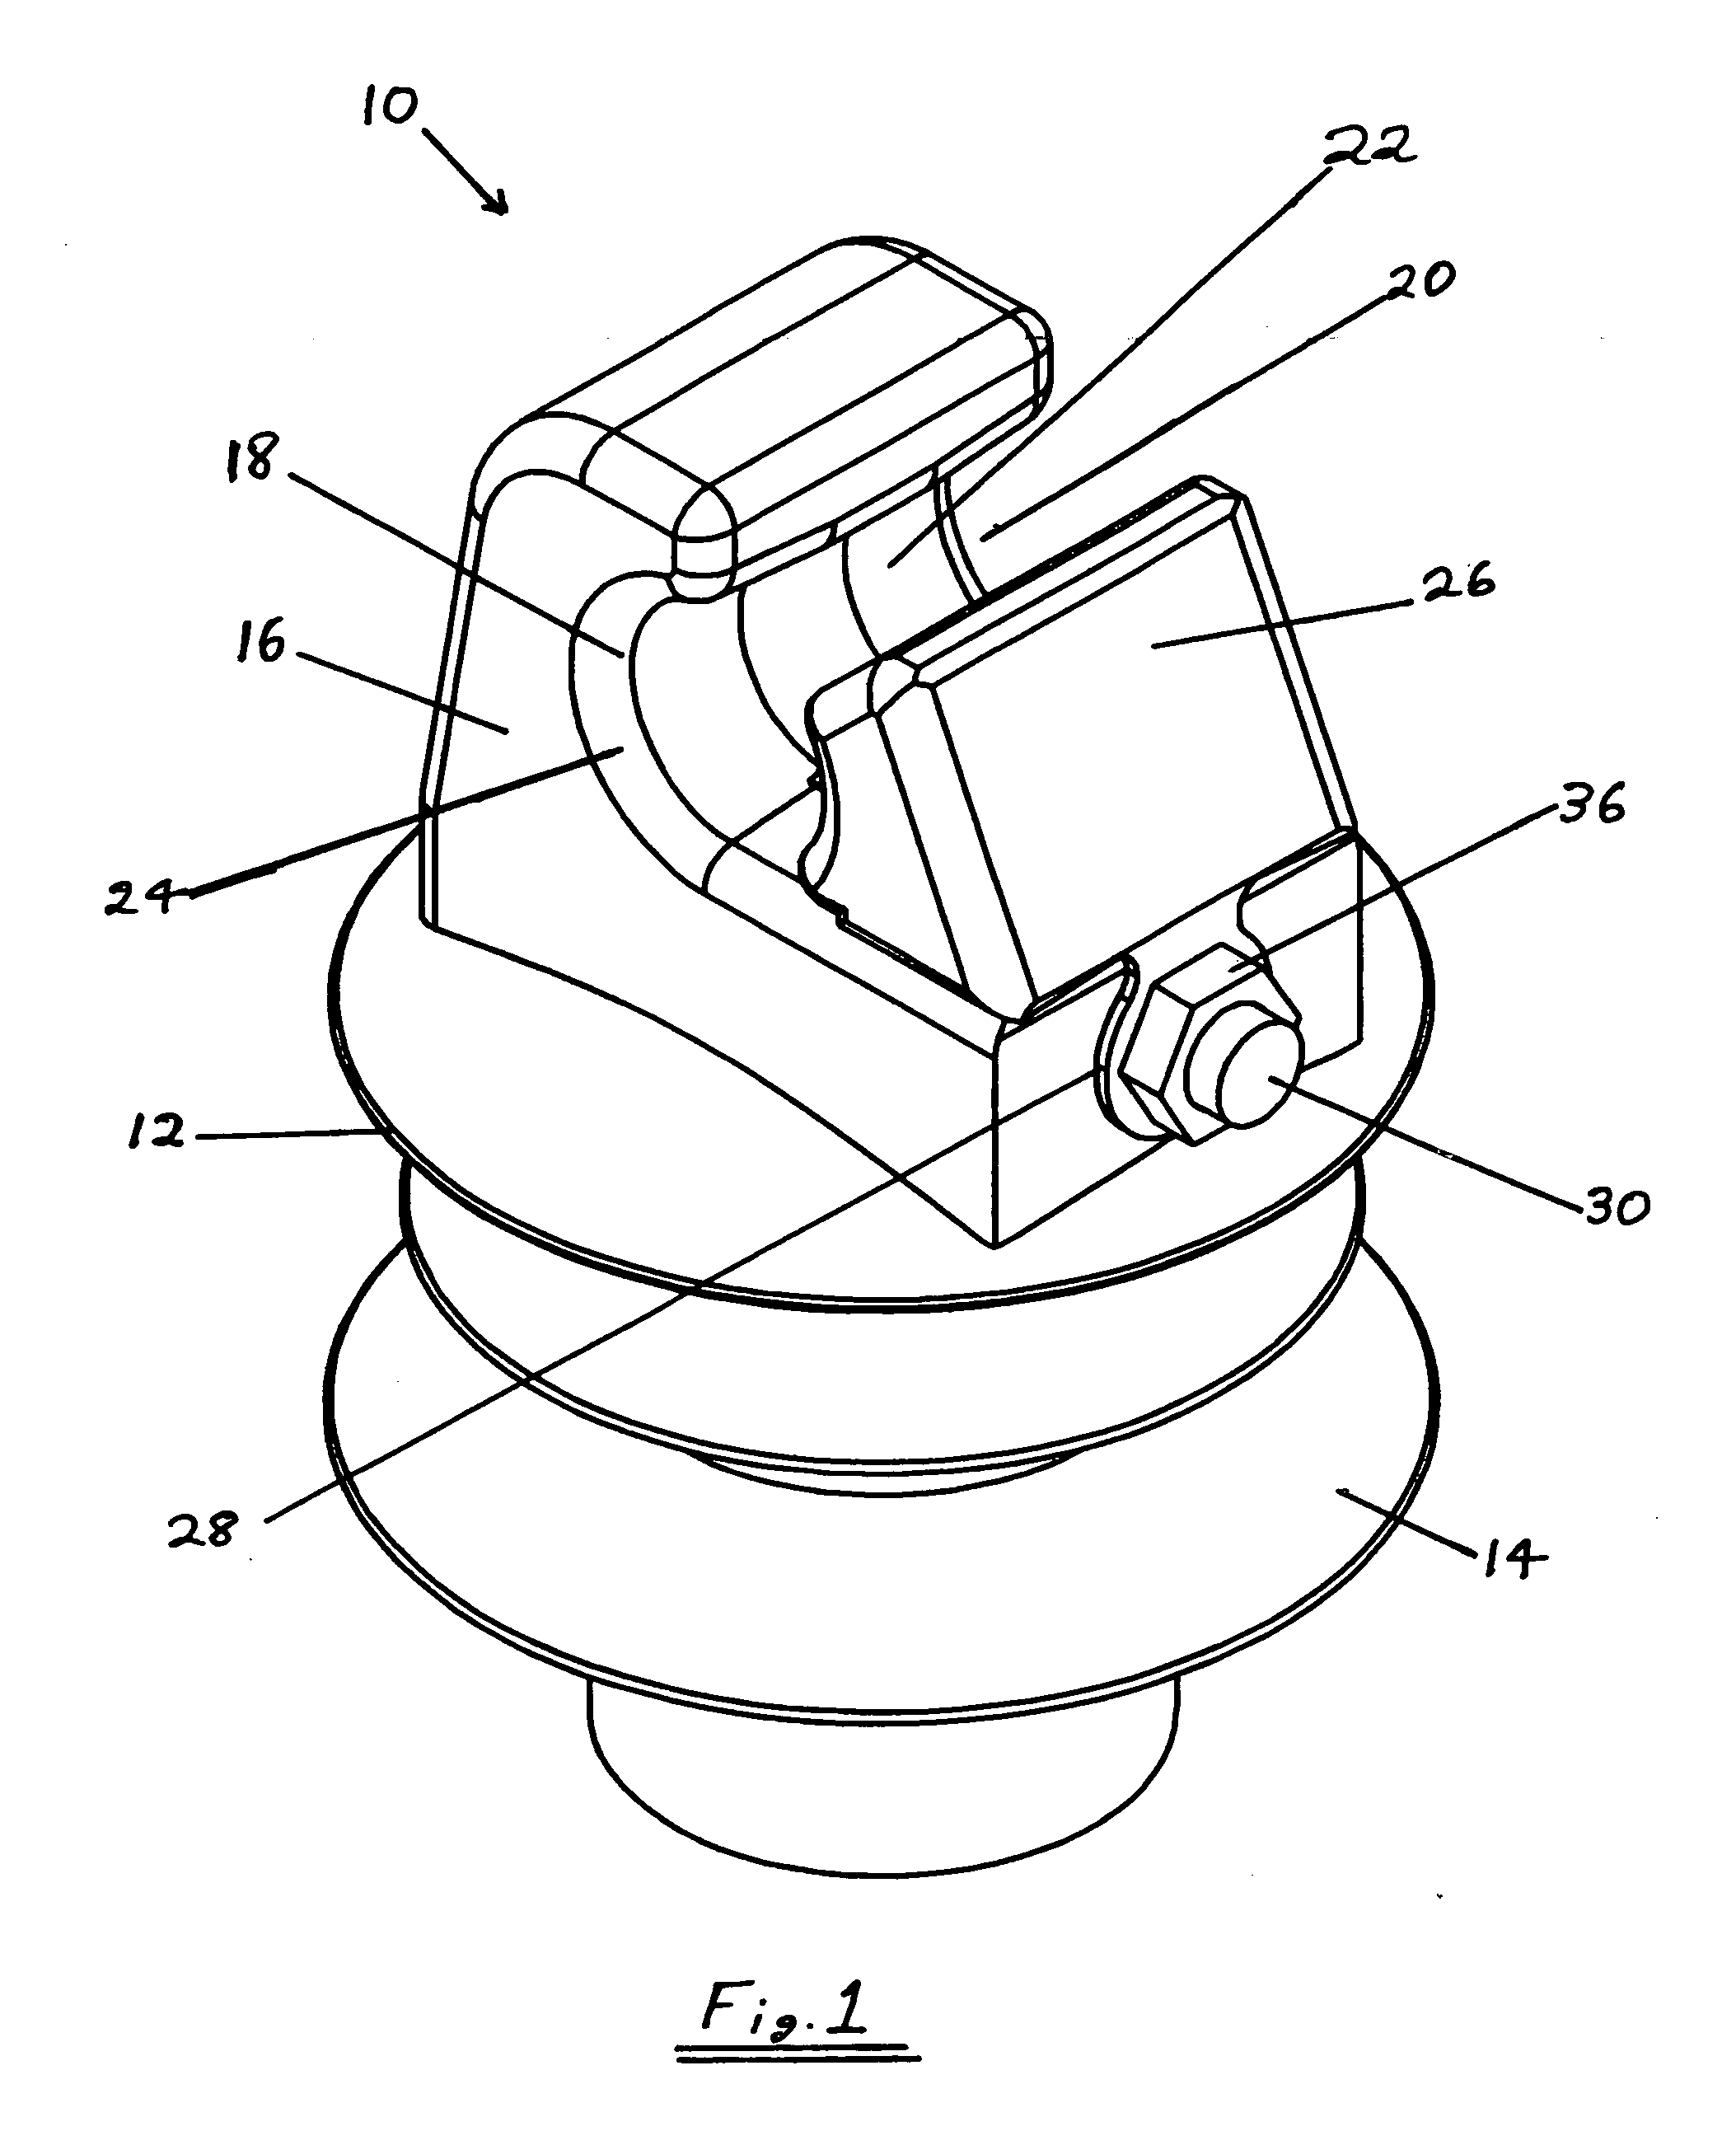 Integrated clamp insulators